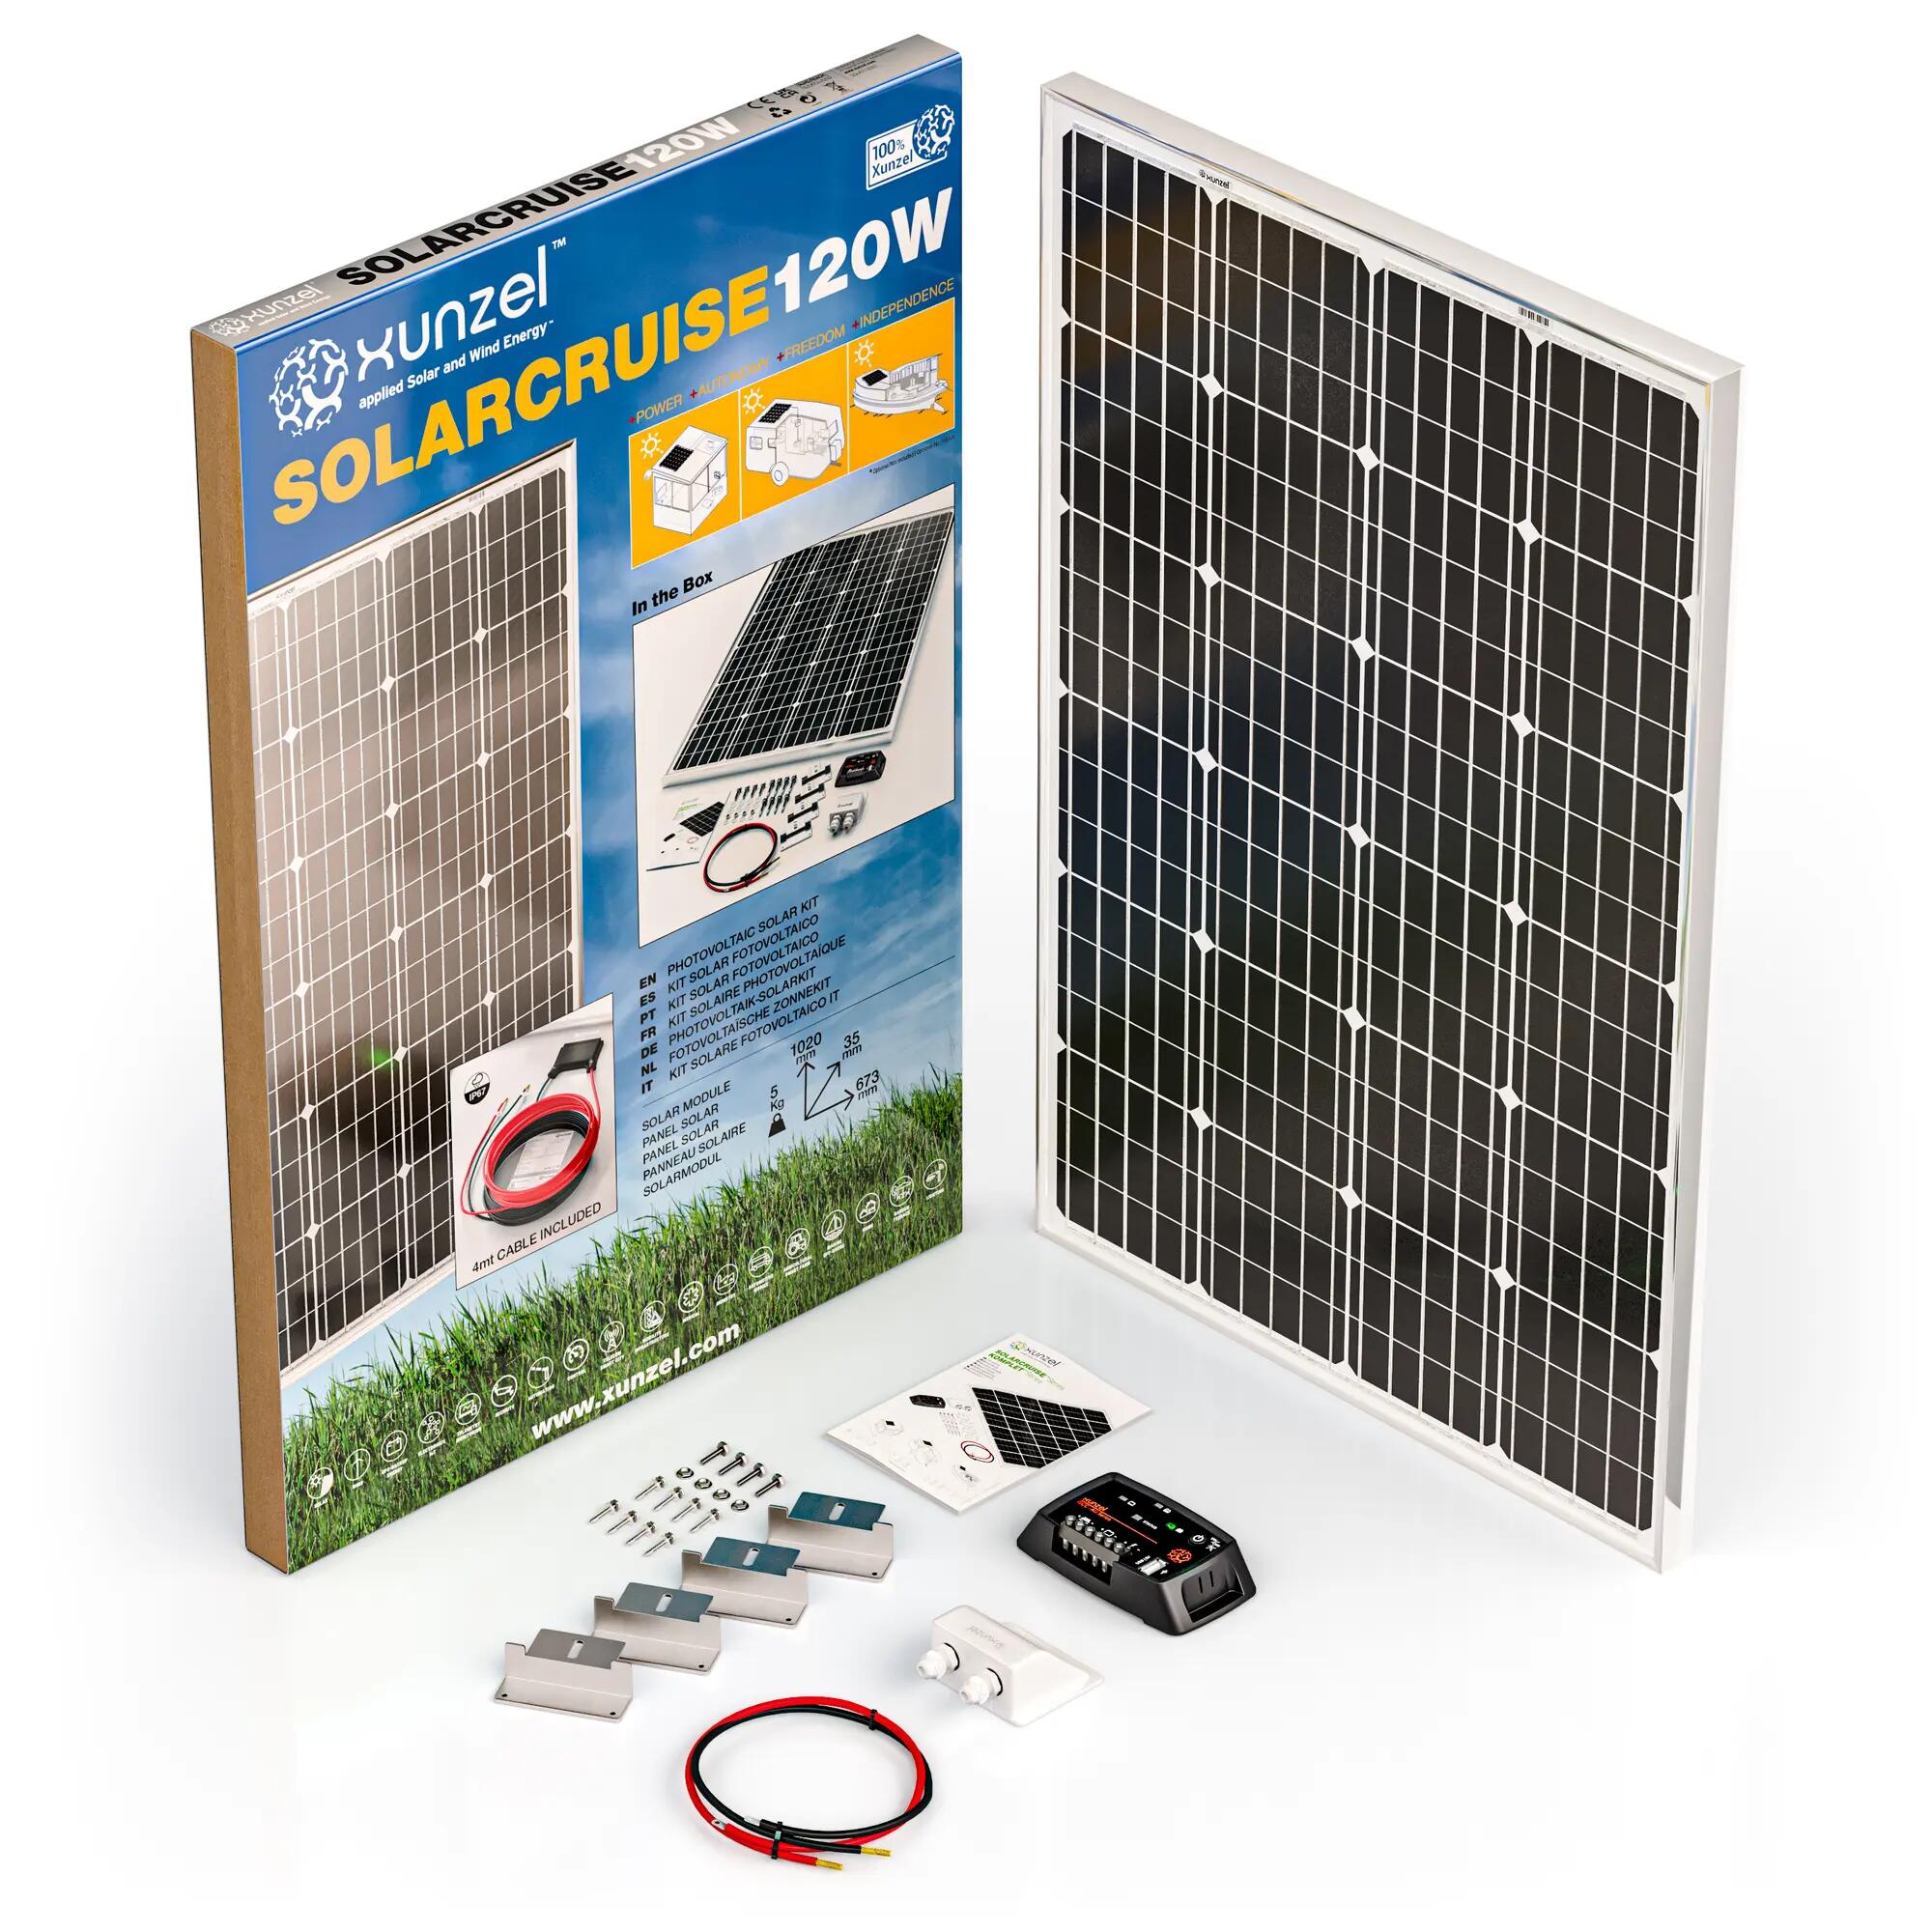 Kit solar fotovoltaico carga batería solarcruise-xunzel-120w-12v con fijaciones